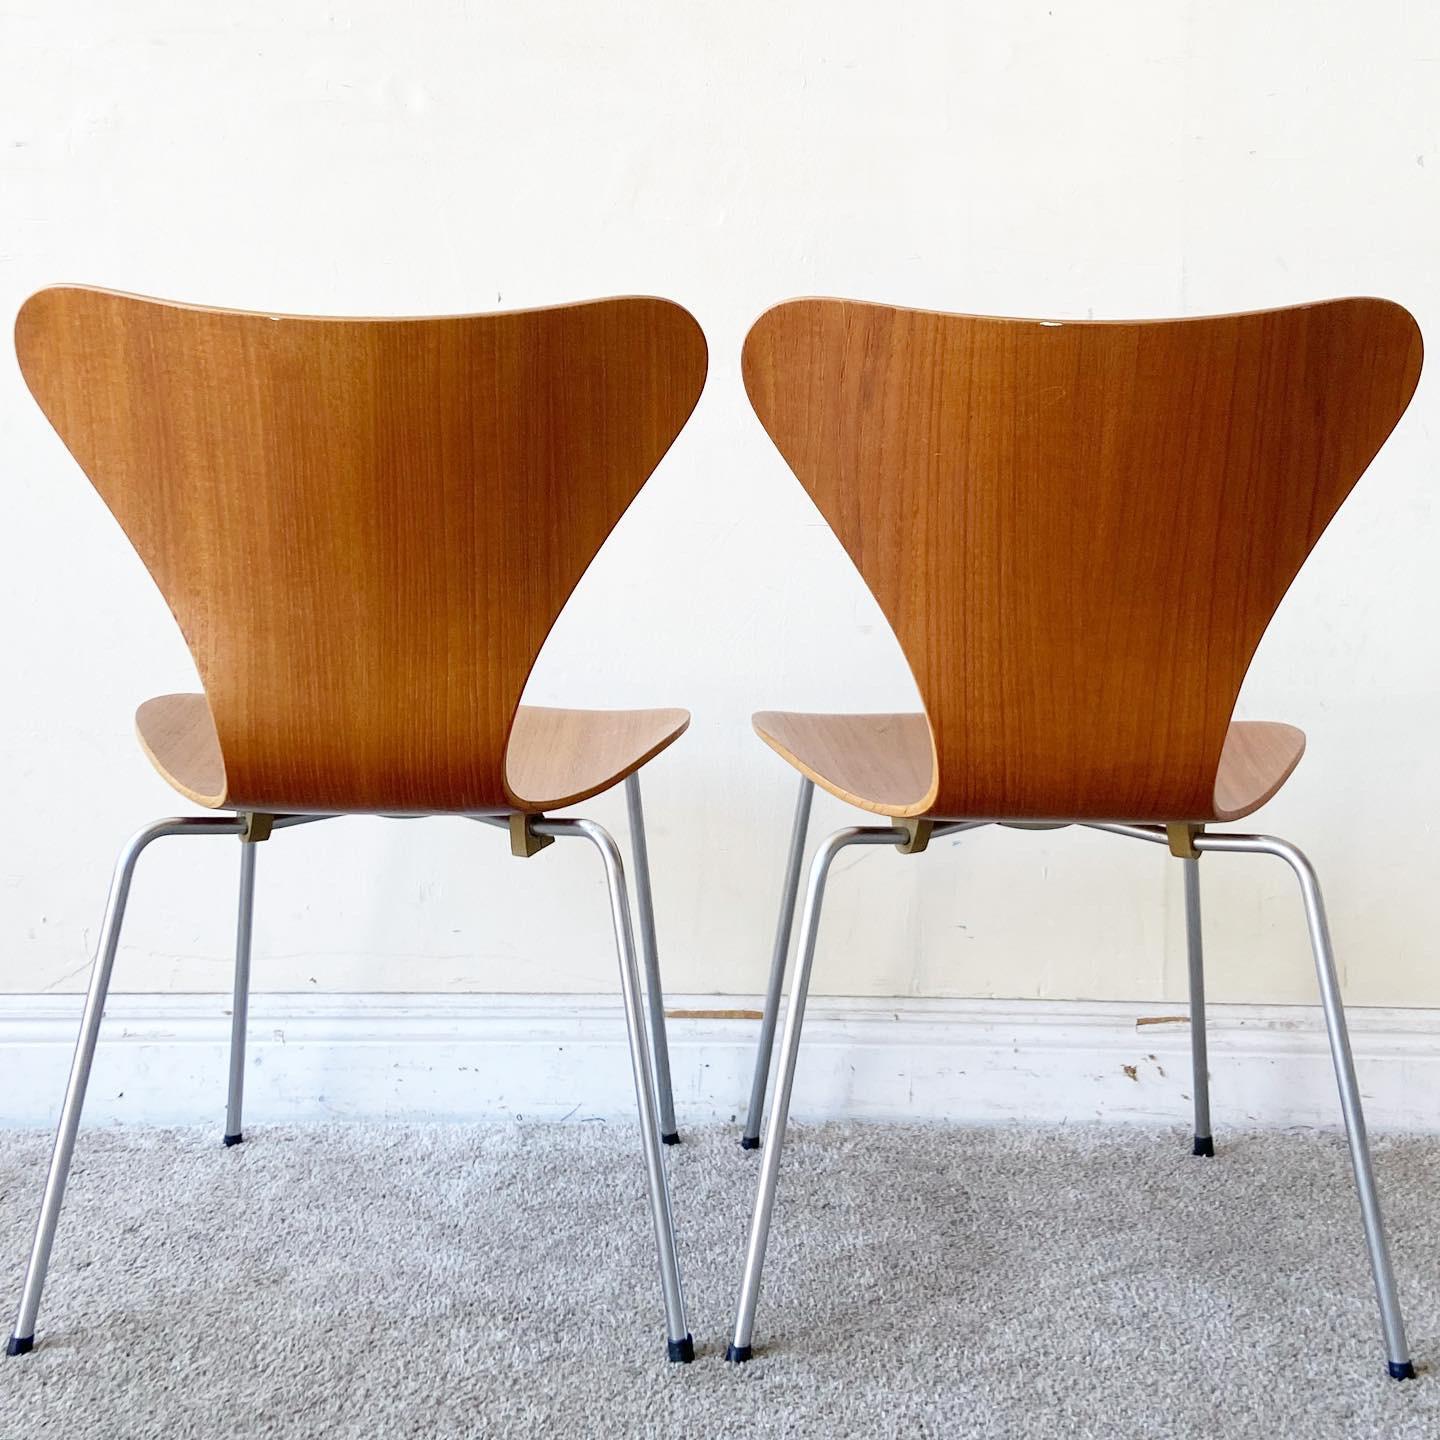 Entdecken Sie dieses bemerkenswerte Set aus vier dänischen Bugholzstühlen von Arne Jacobsen, Modell 3107, entworfen von Arne Jacobsen für Fritz Hansen. Diese kultigen dänischen Bugholzstühle aus der Mitte des Jahrhunderts verkörpern zeitlose Eleganz